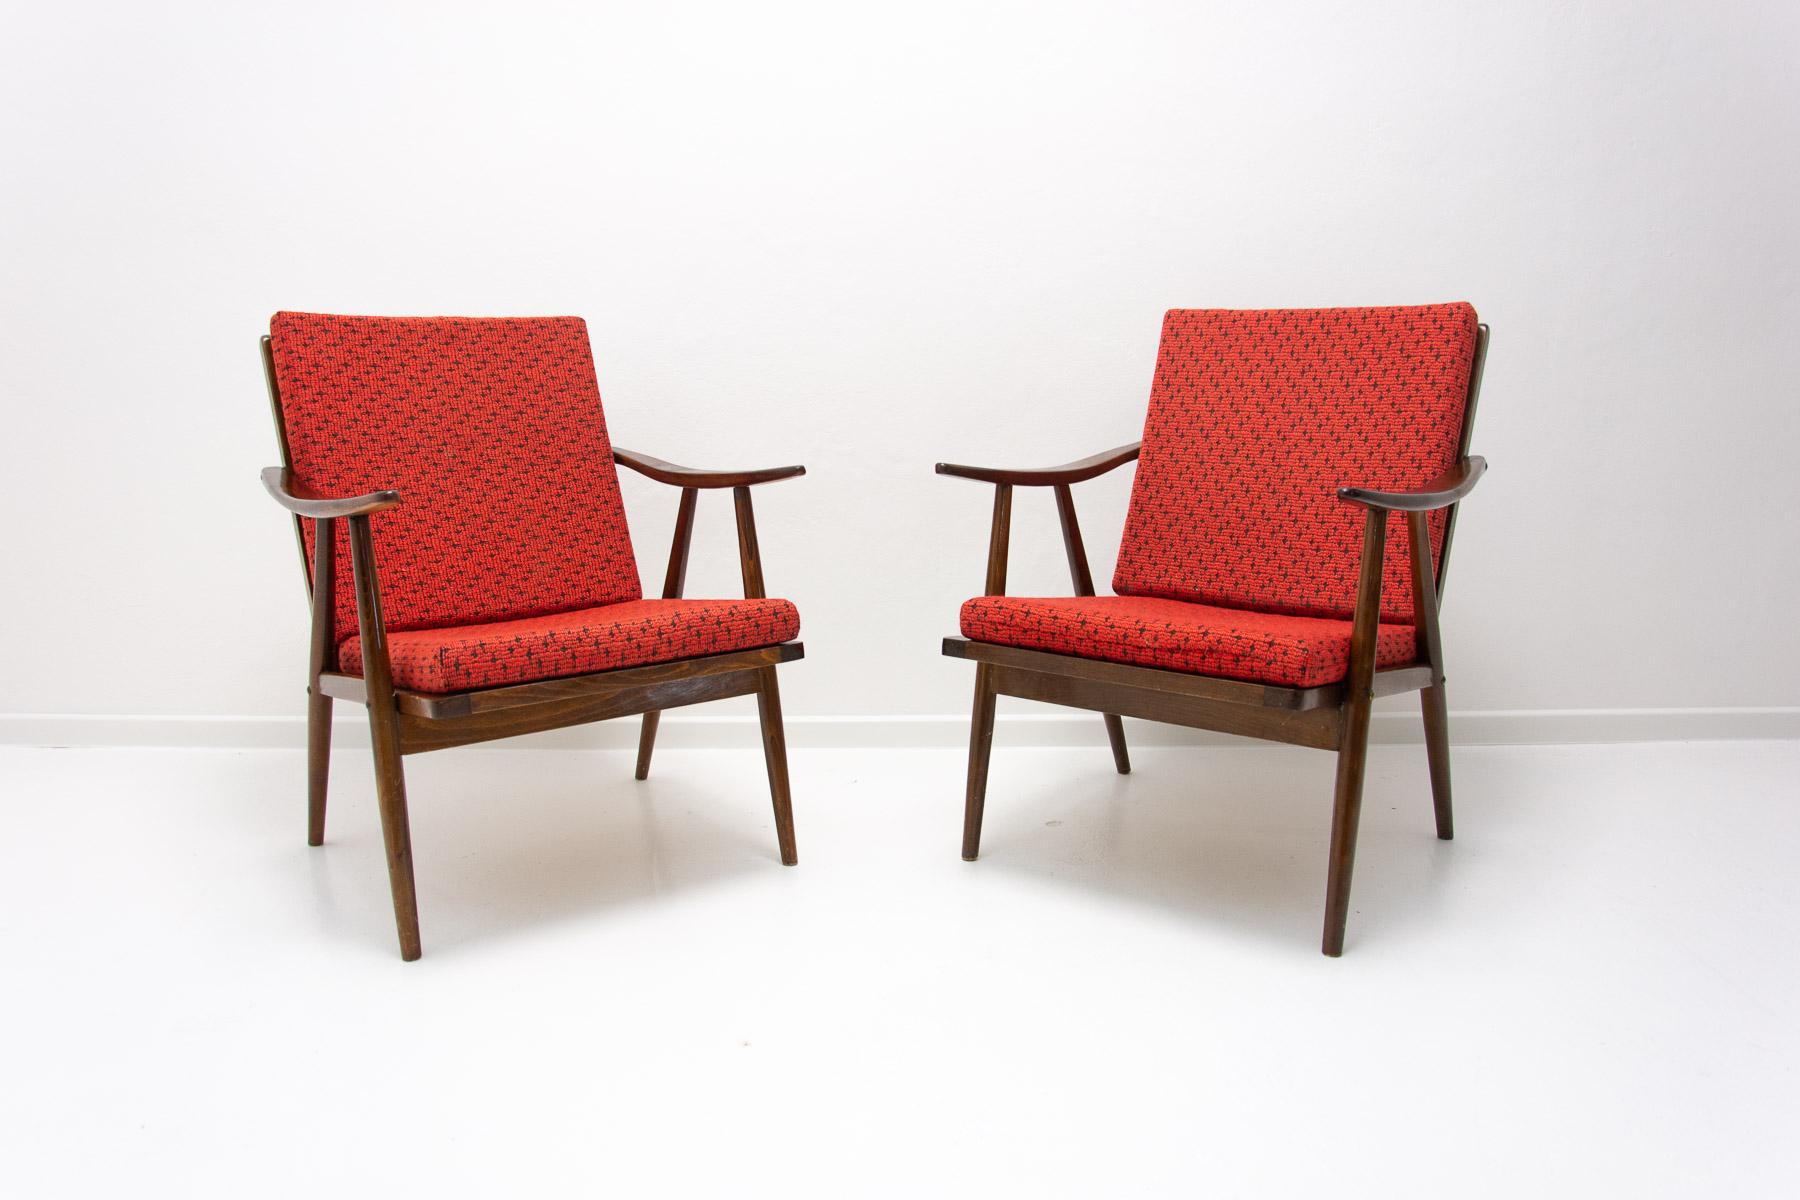 Diese Sessel wurden von Jaroslav Šmídek für die Firma TON entworfen und in der ehemaligen Tschechoslowakei in den 1970er Jahren hergestellt. Sie sind aus Buchenholz gefertigt.

Die Stühle sind stabil und bequem, die Federn unter der Sitzfläche